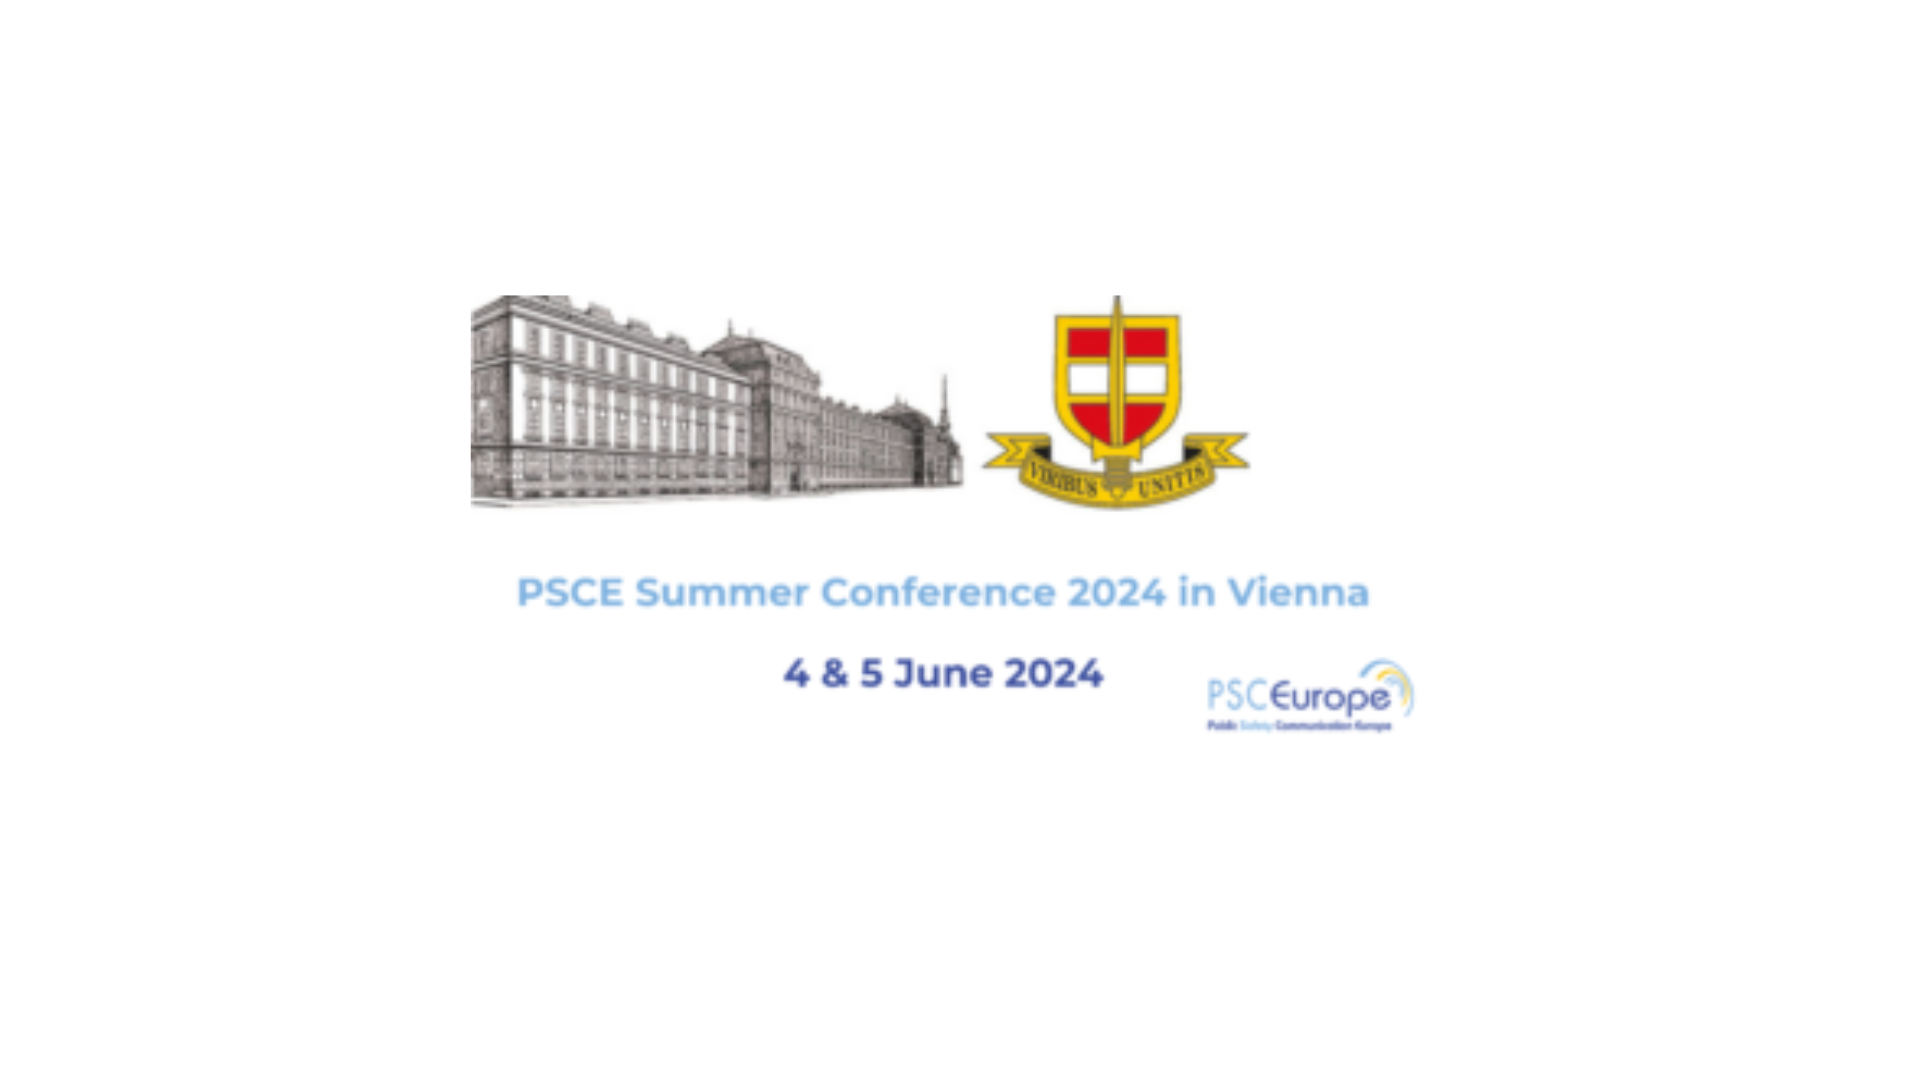 PSCE Summer Conference 2024